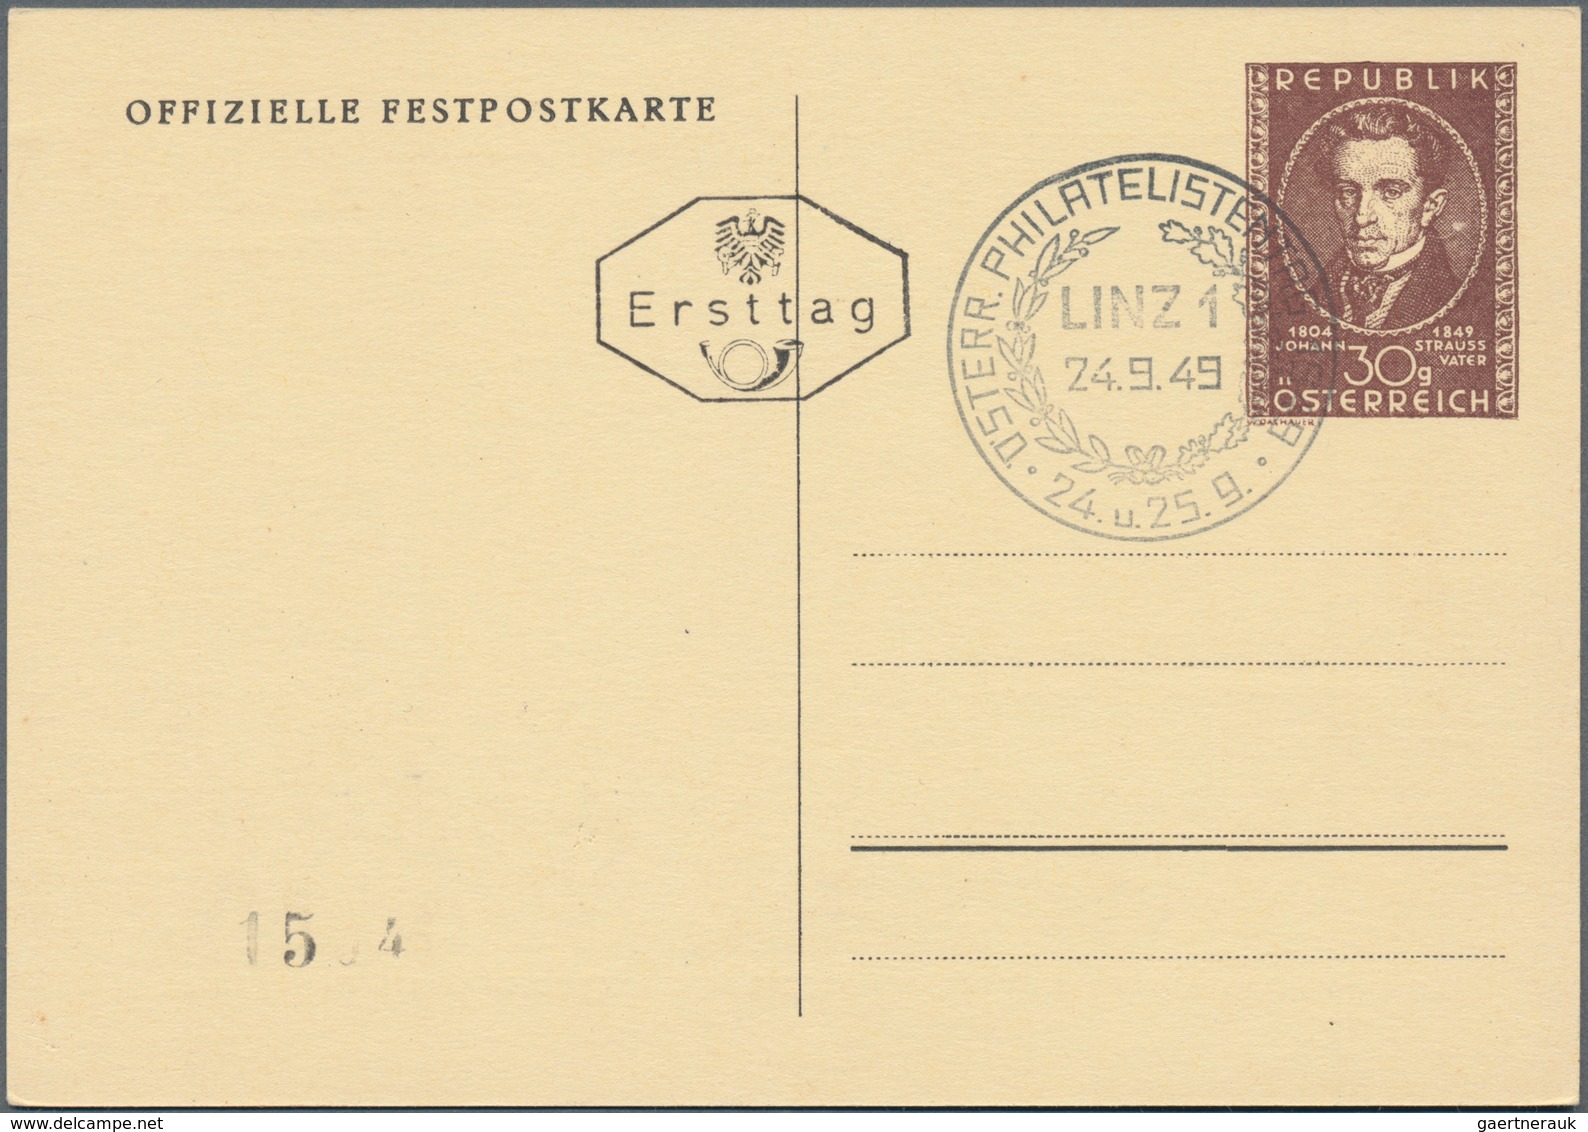 Österreich - Ganzsachen: 1947/1959 (ca.), inter. Bestand mit 37 Ganzsachen mit vielen Privatganzsach